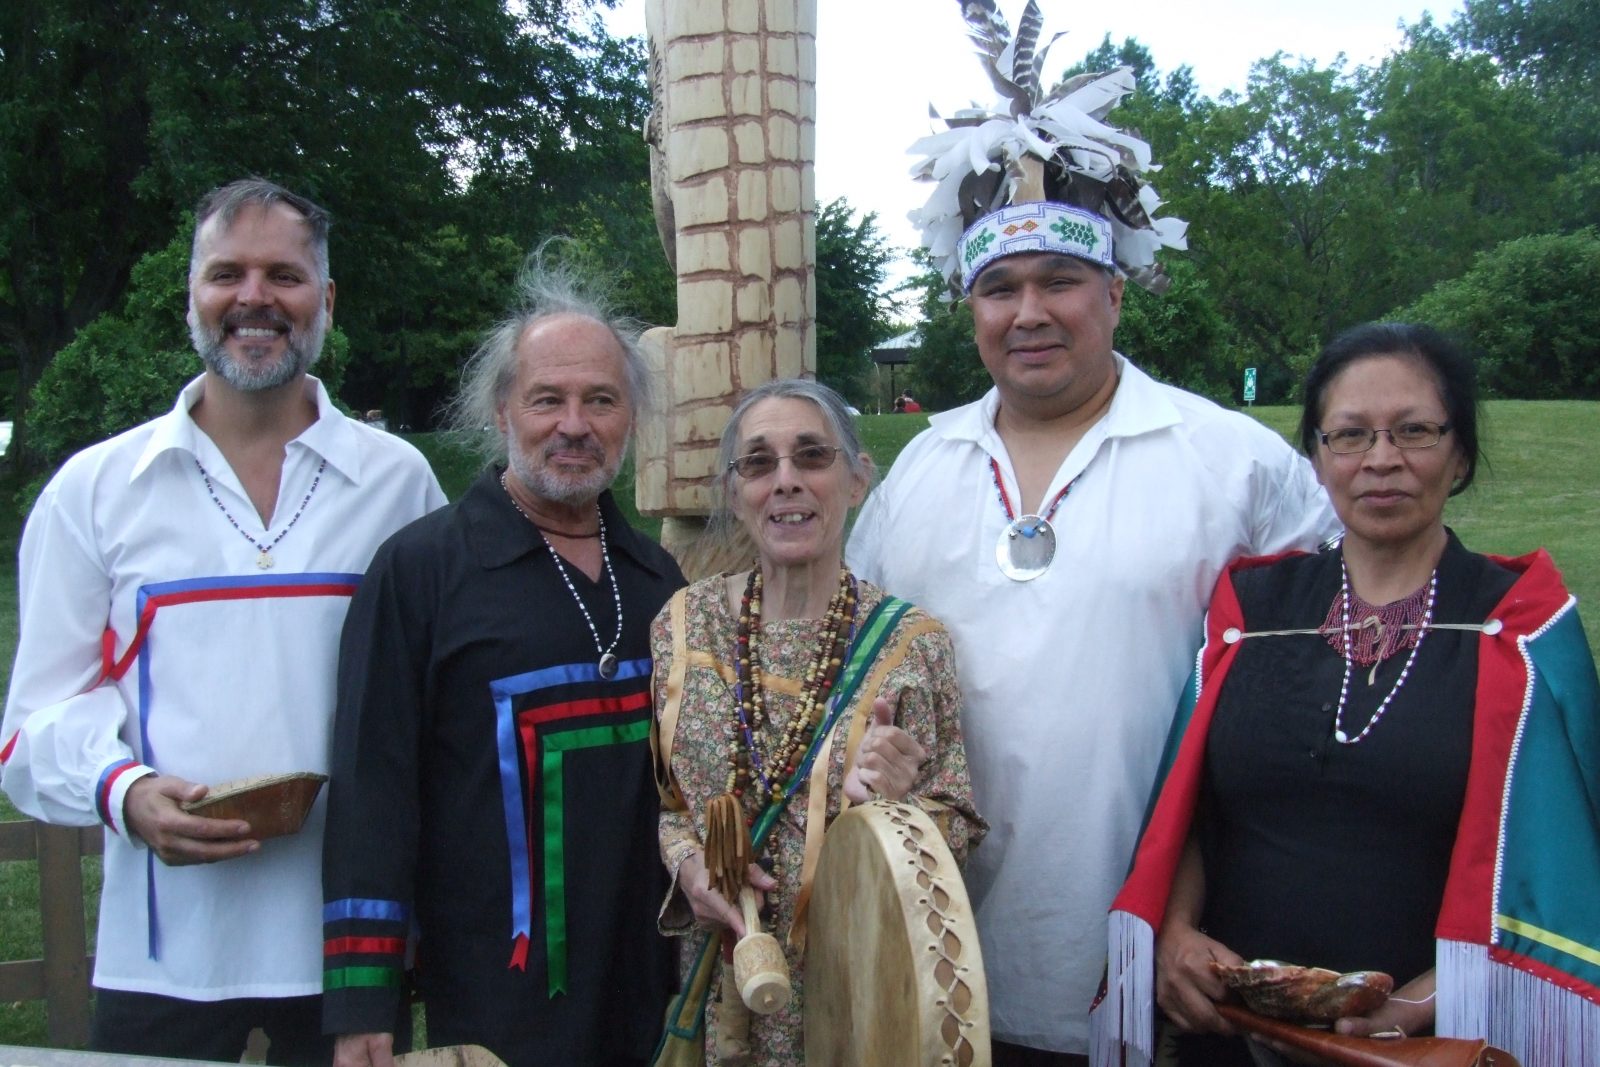 La Ville de Boucherville reçoit un mât totémique autochtone de quatre nations amérindiennes